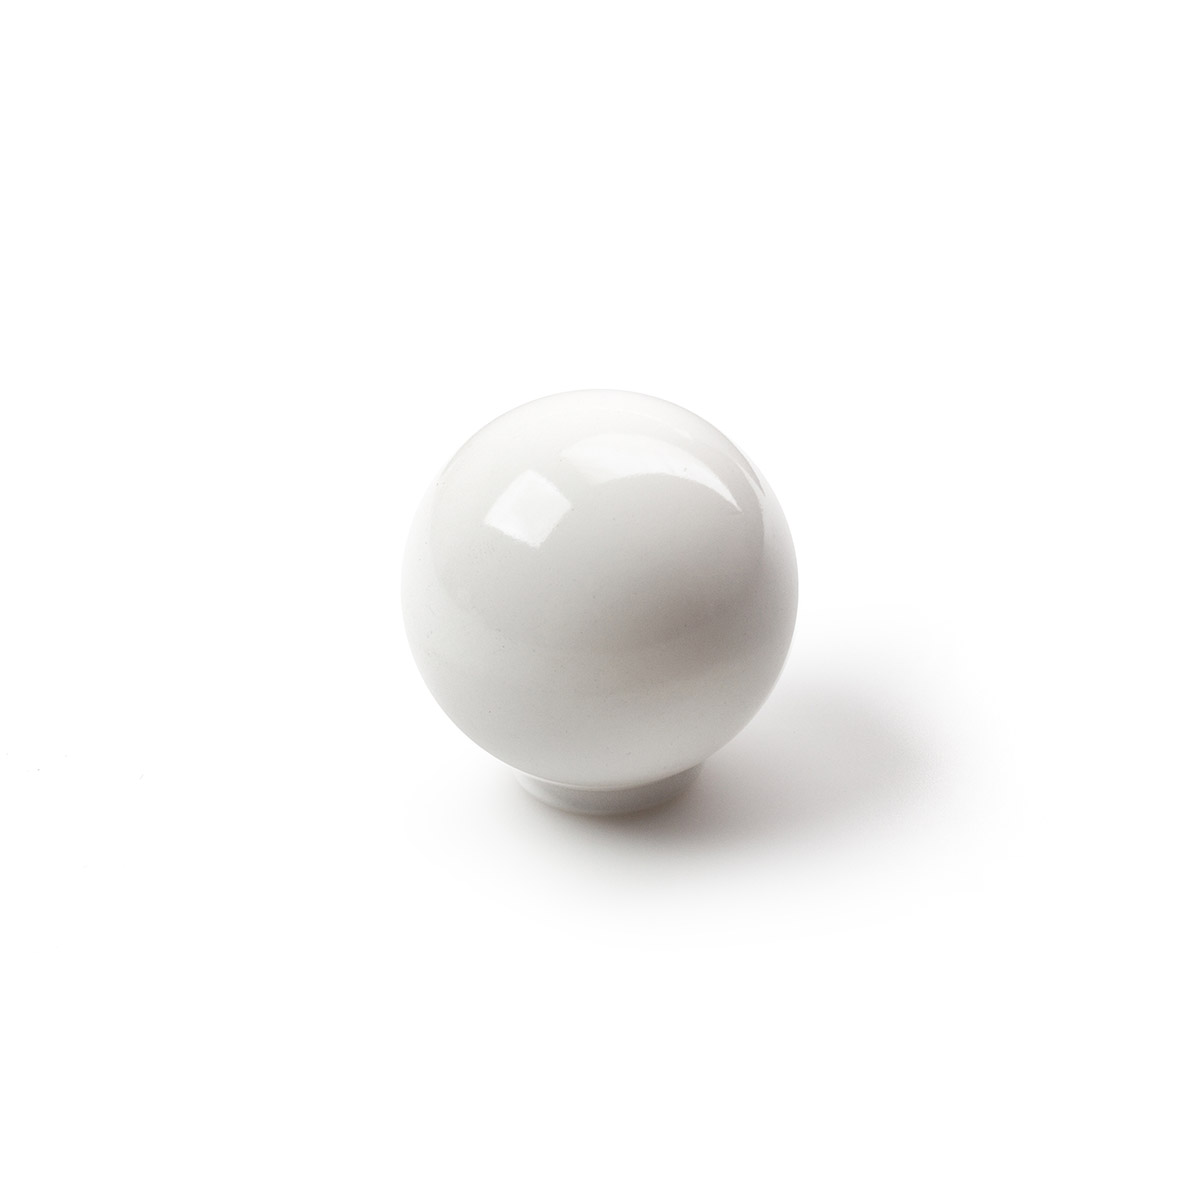 Pomo de plástico con acabado blanco, dimensiones: 34x34x36mm Ø: 34mm